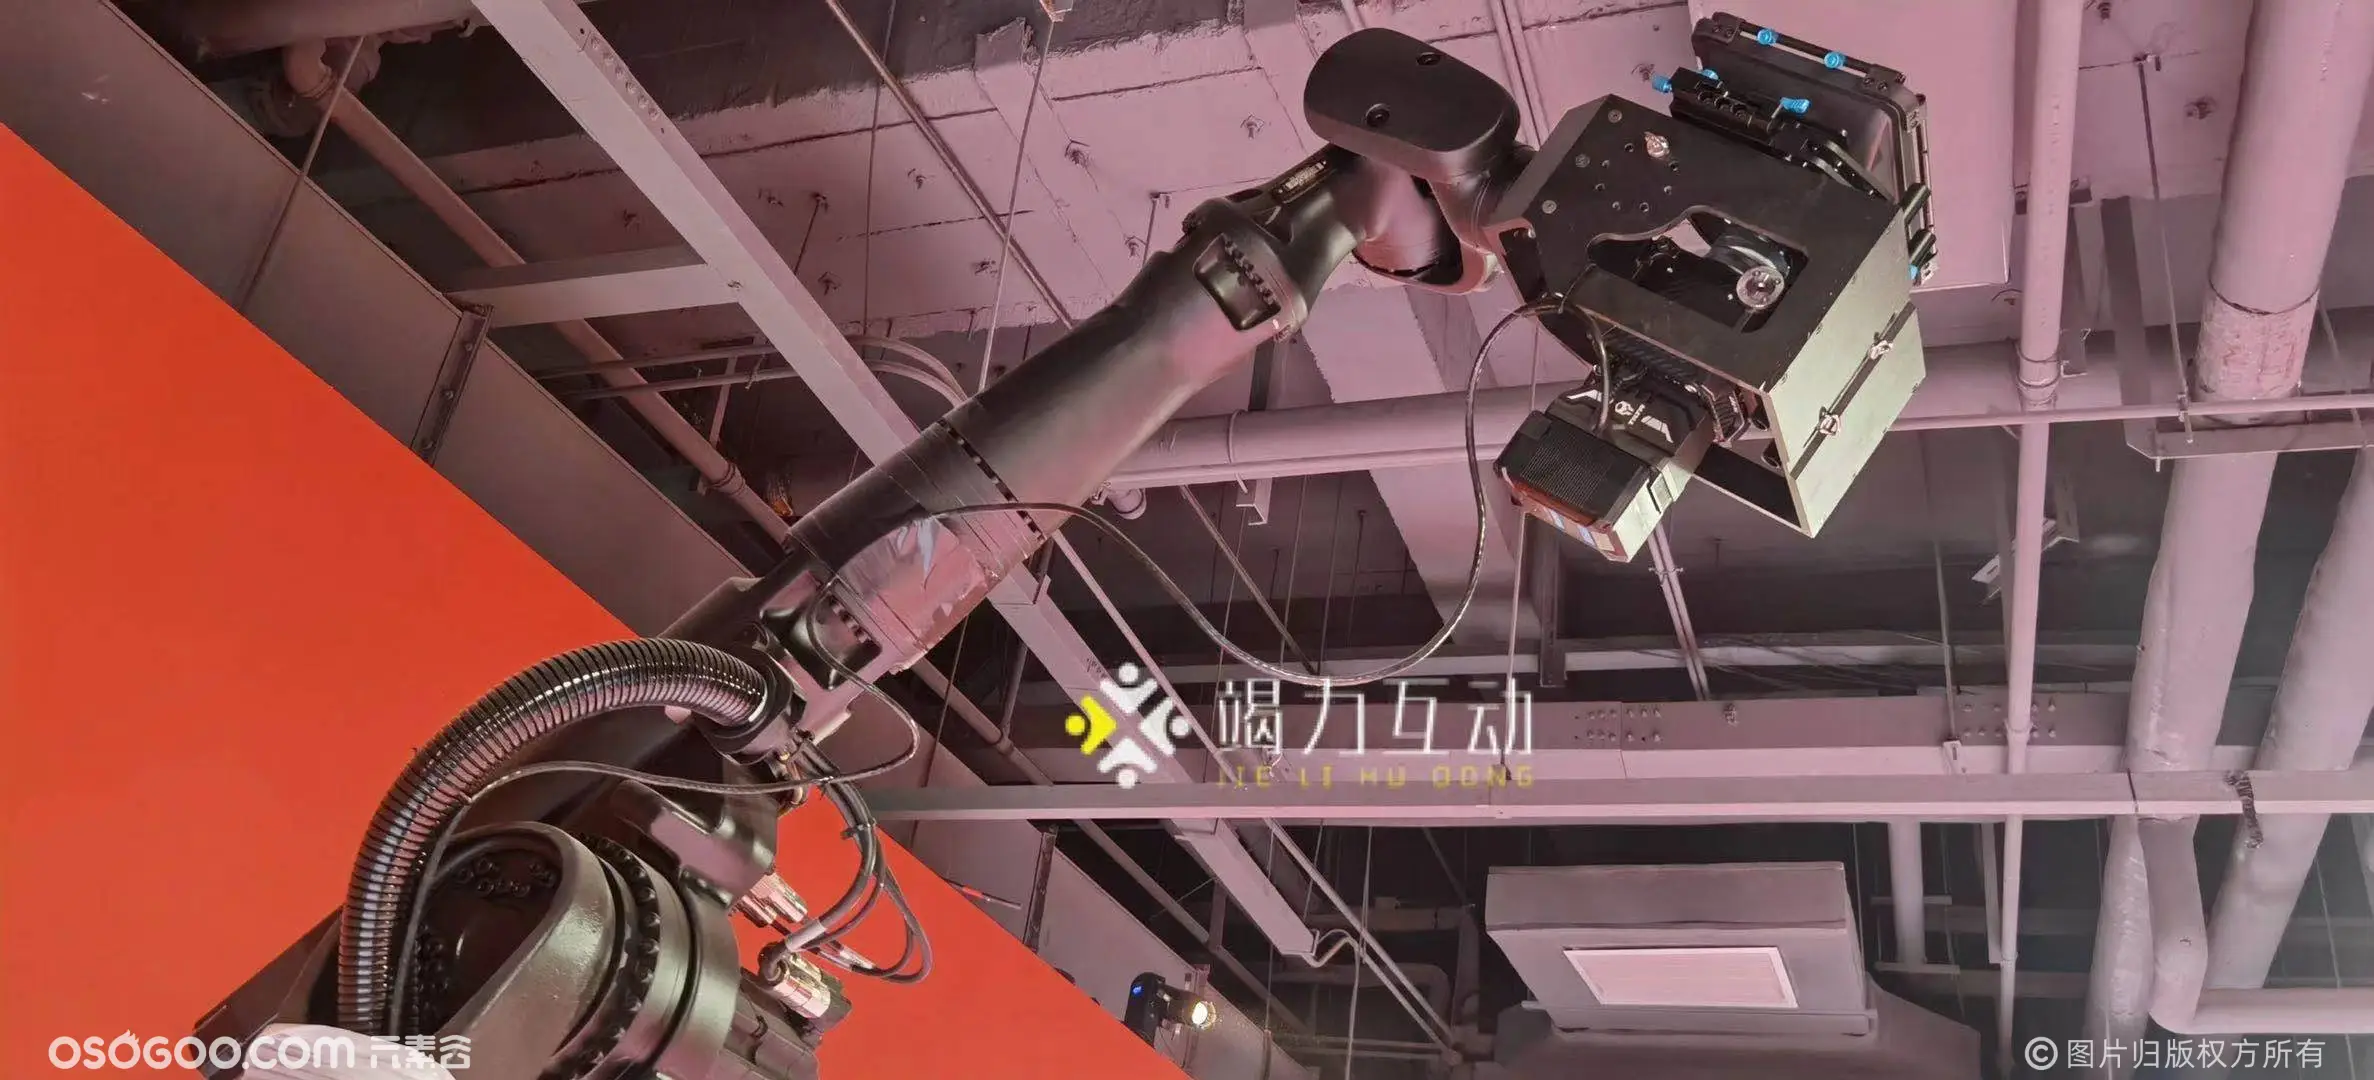 2021年新品格莱美机械臂拍摄慢镜头摄影